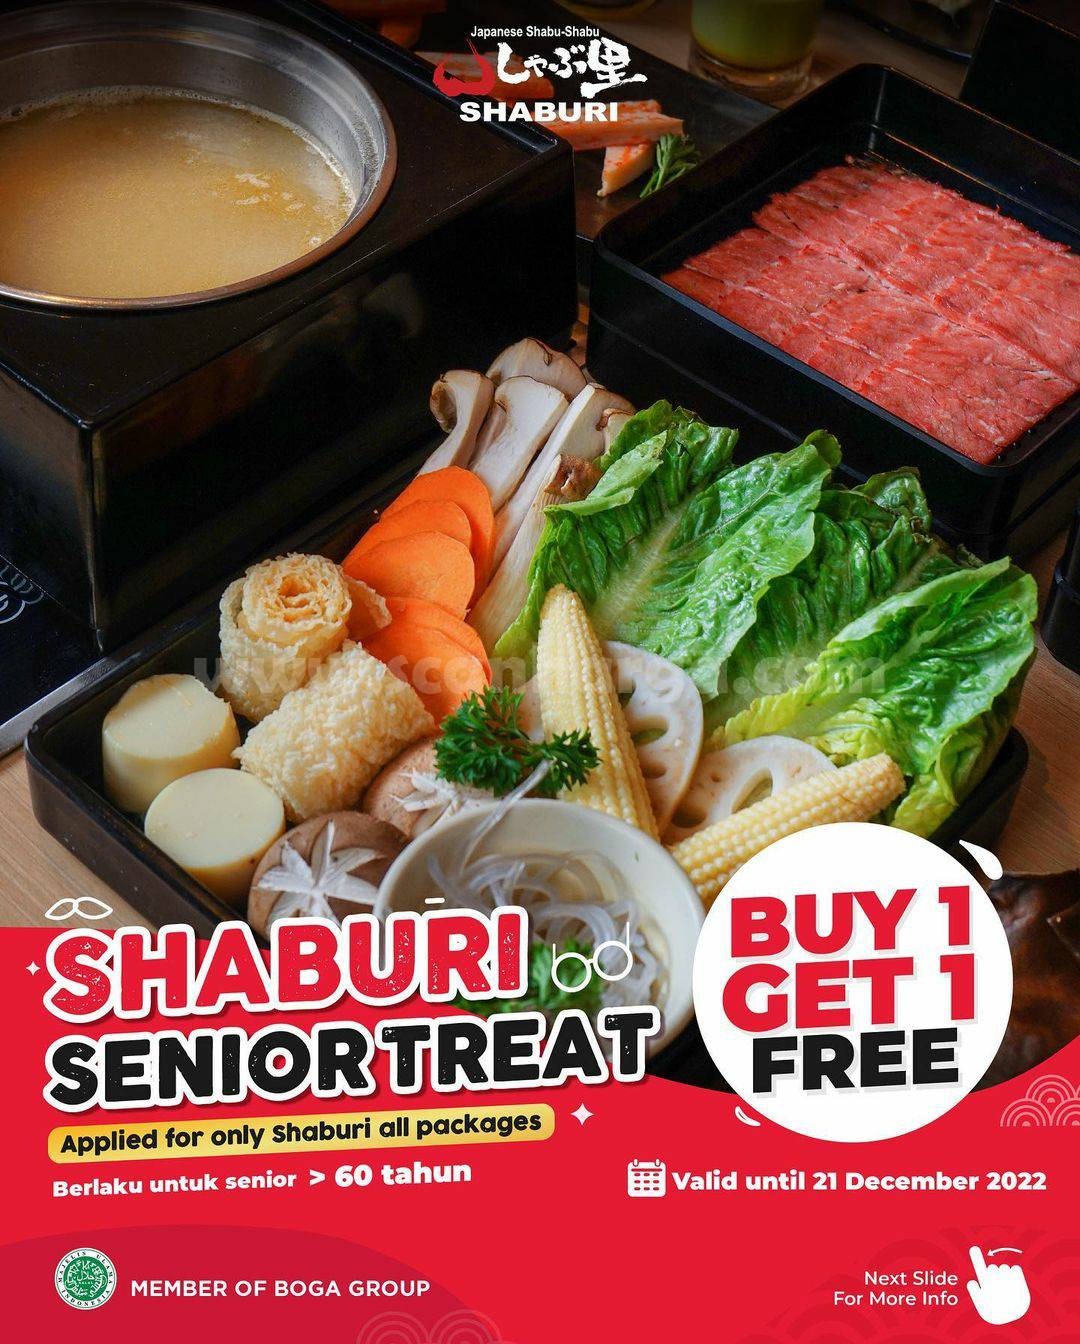 Promo SHABURI Senior Treat – Spesial Beli 1 Gratis 1